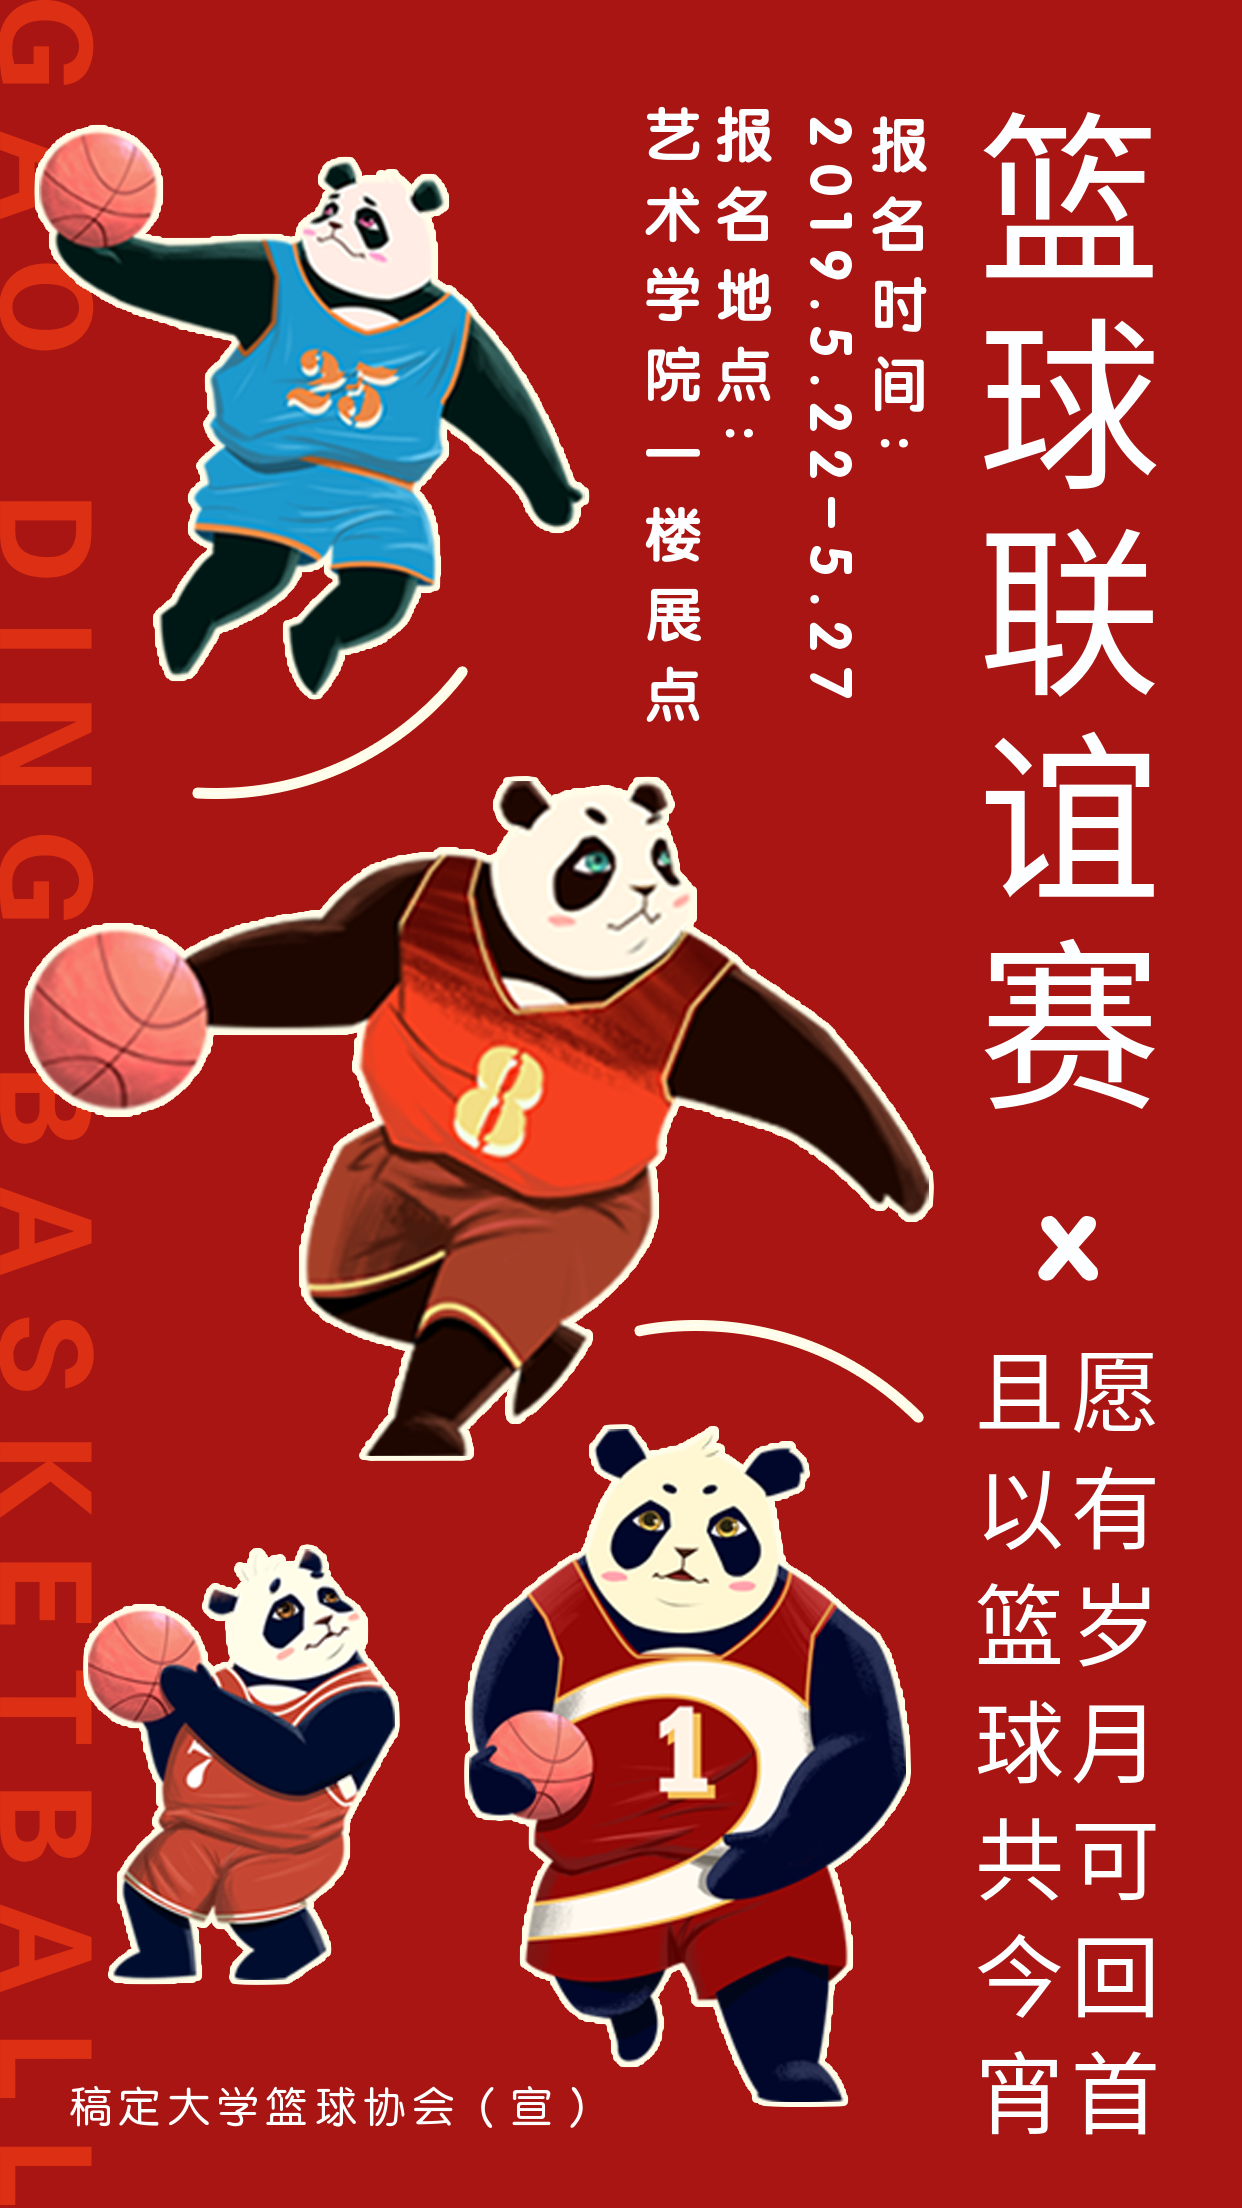 熊猫篮球联谊赛手机海报